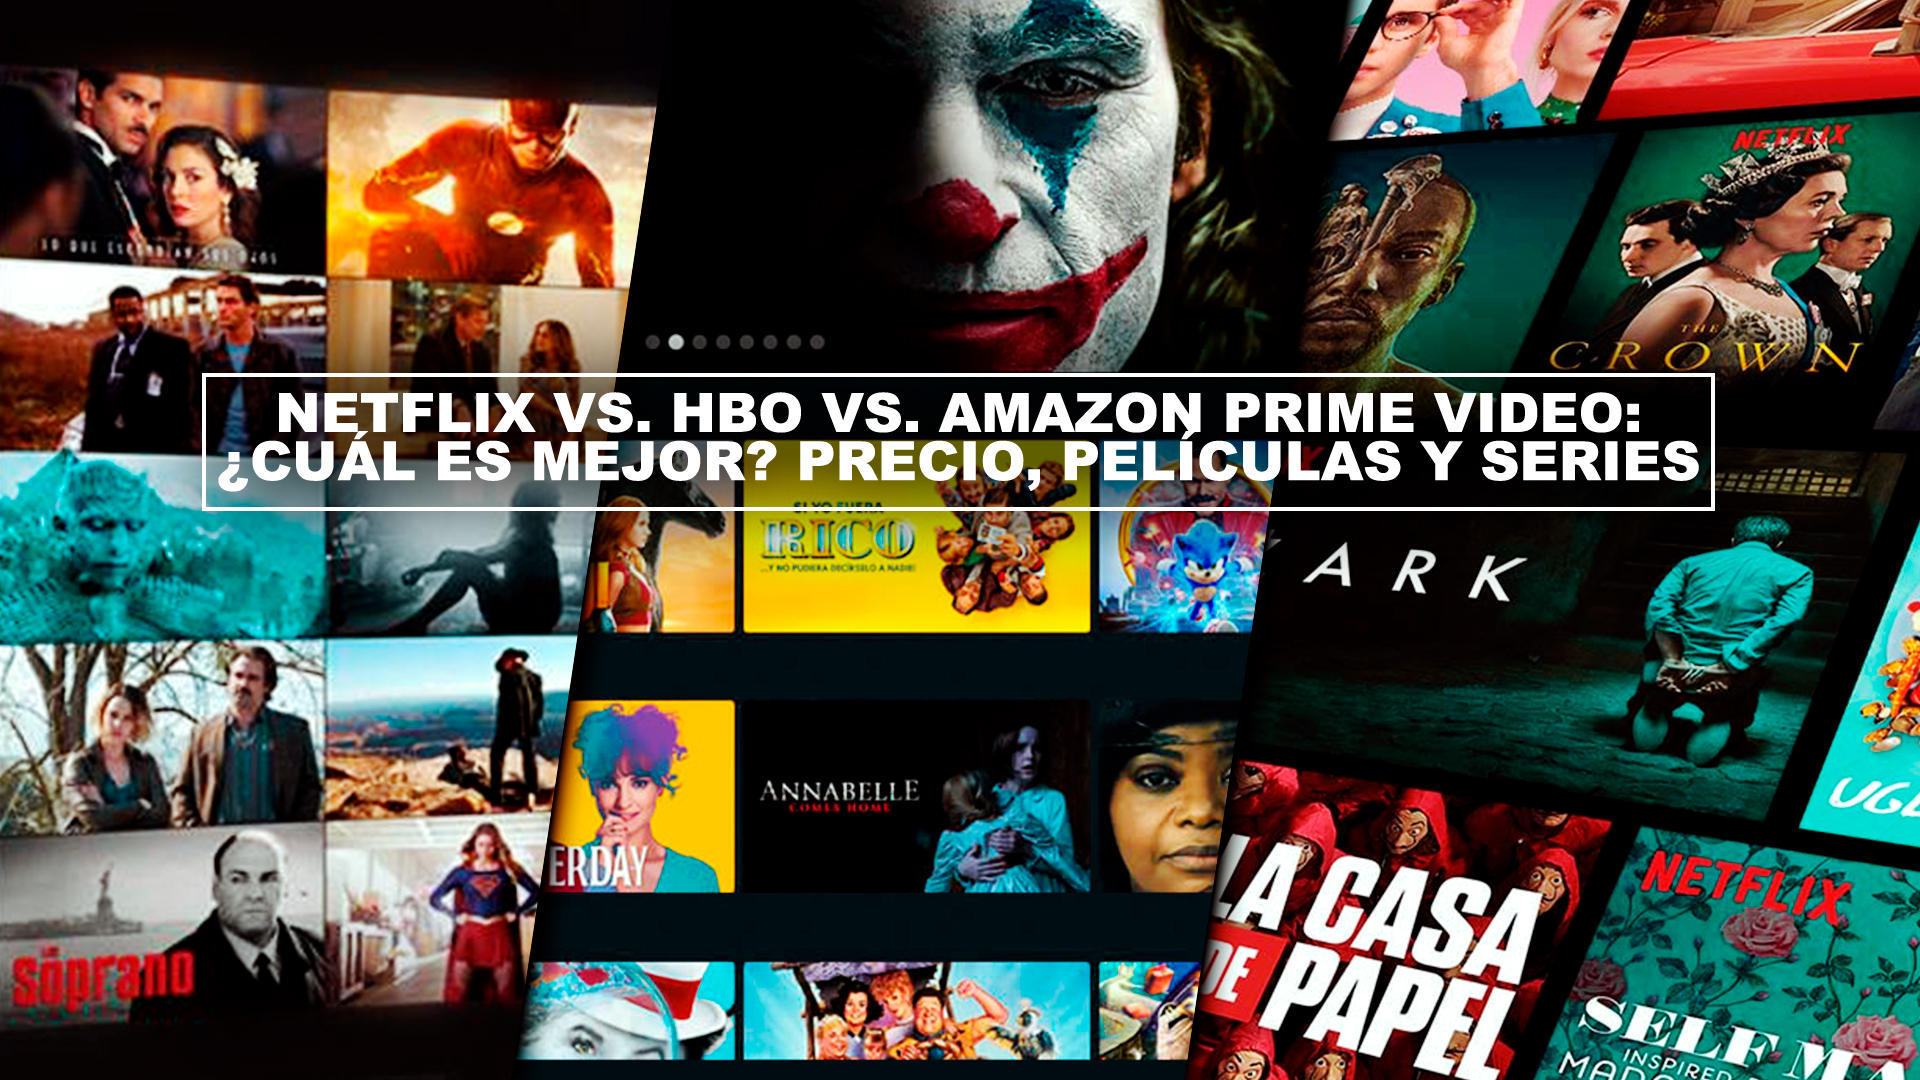 Netflix vs. HBO vs. Amazon Prime Video:Cul es mejor? Precio, pelculas y series (2021)